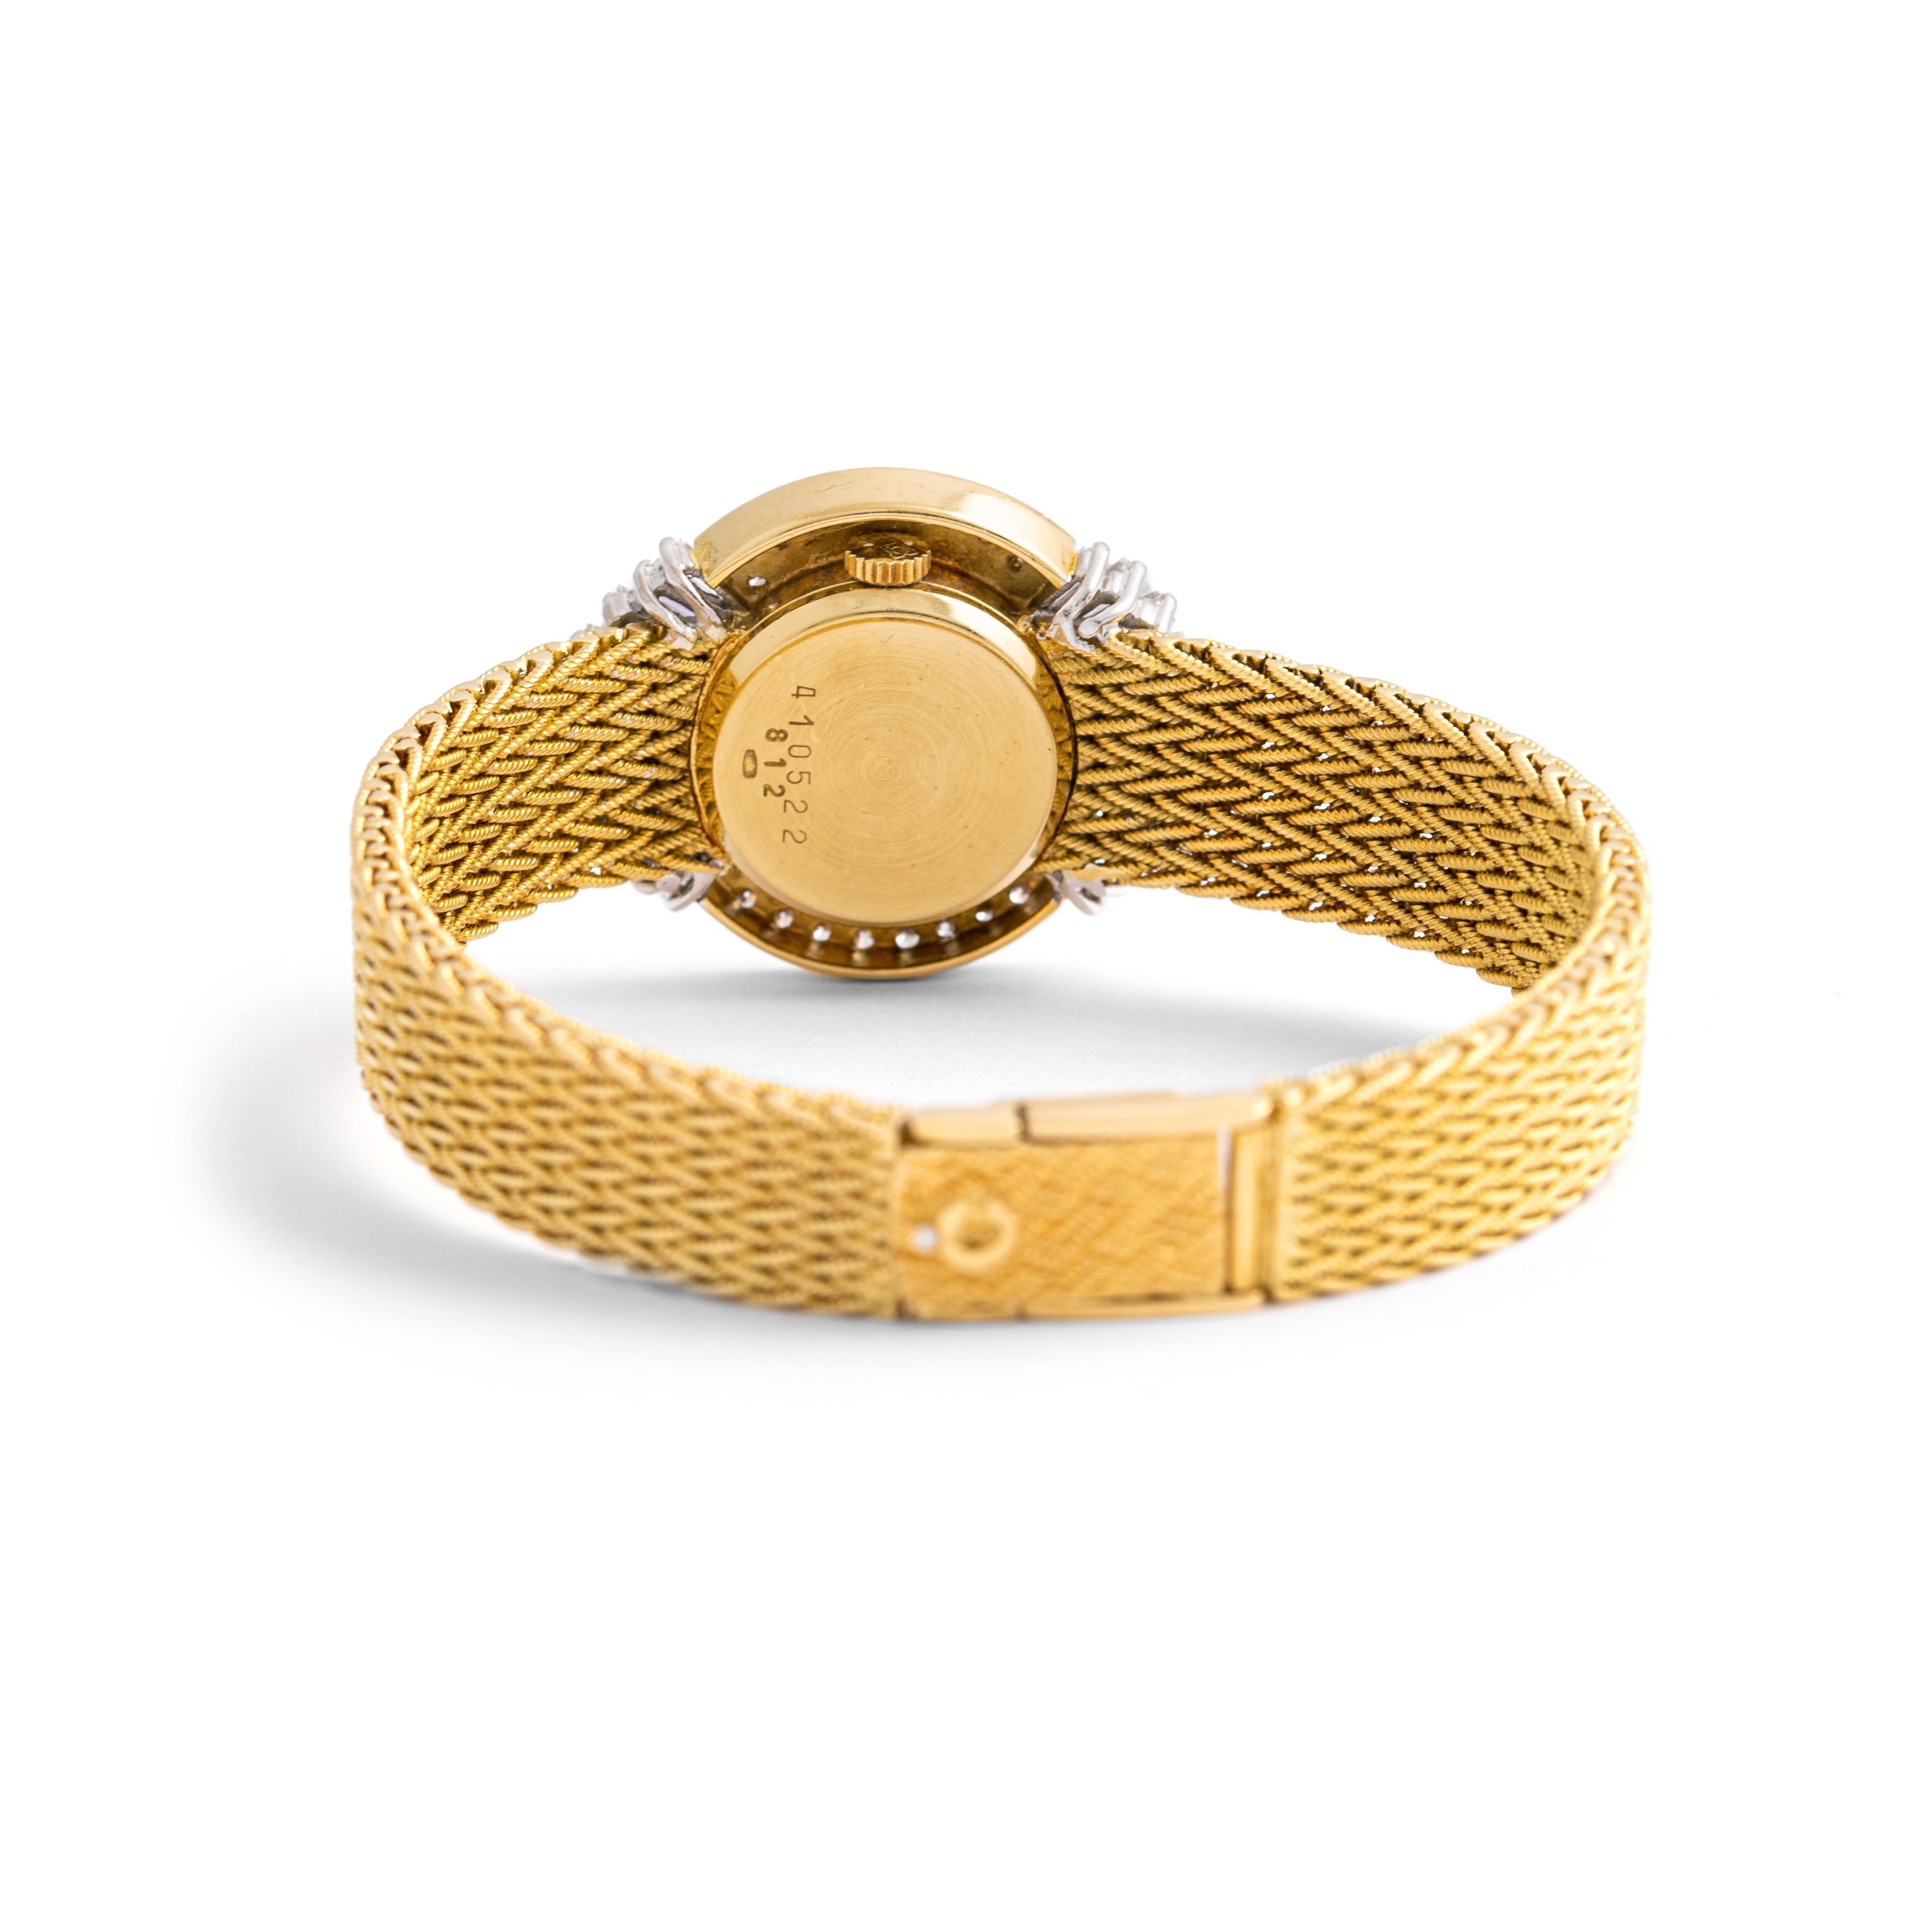 Chopard Diamant Gelbgold 18K Armbanduhr.
Pave-Fassung mit Diamanten im Rund- und Baguetteschliff.
Signiert Chopard. Nummer 410522 812.

Abmessungen des Gehäuses: 3,50 x 2,50 Zentimeter.
Länge des Handgelenks: etwa 16.50 Zentimeter.

Gesamtgewicht: